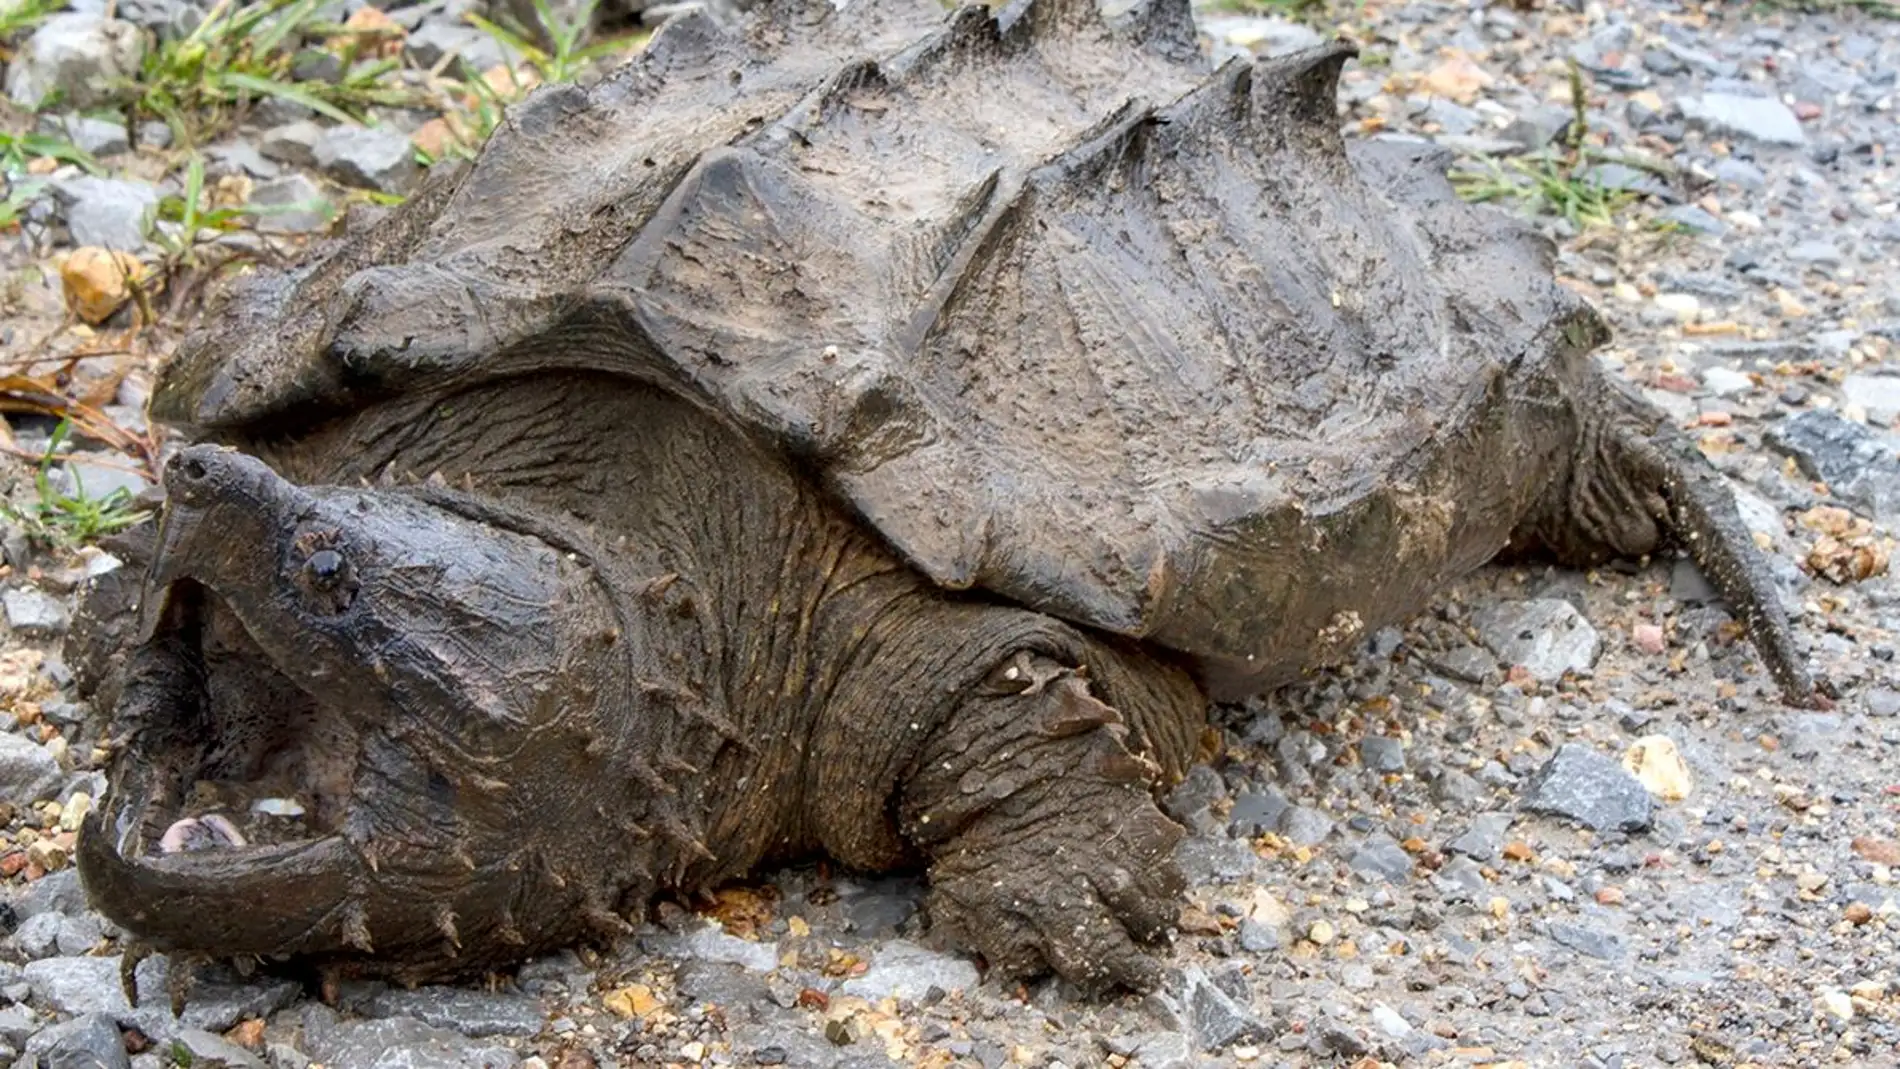 La tortuga caiman reaparece tras 30 anos sin dar senales en estado salvaje